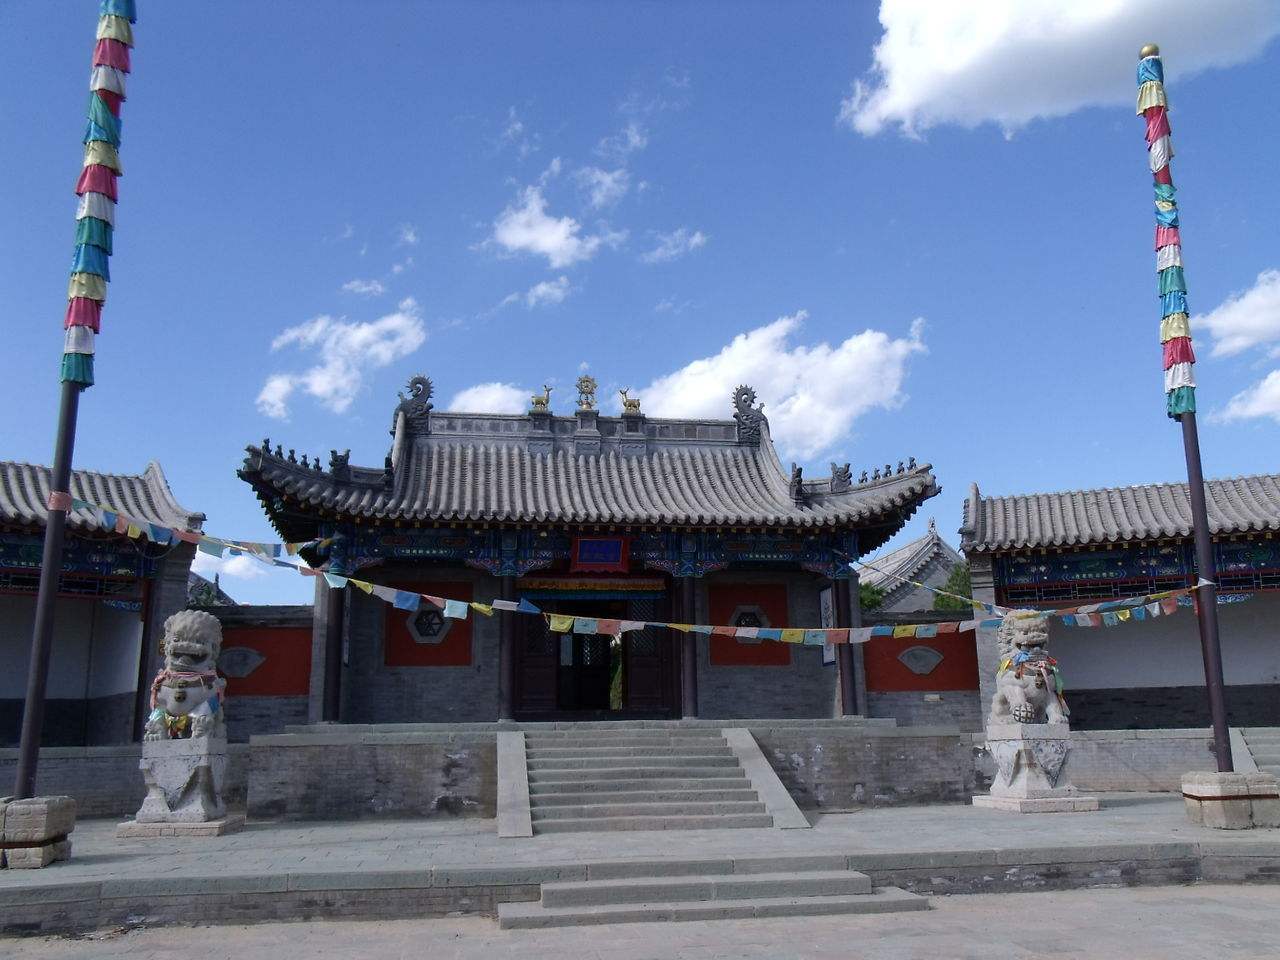 【携程攻略】通辽库伦三大寺景点,库伦三大寺位于内蒙古自治区库伦旗